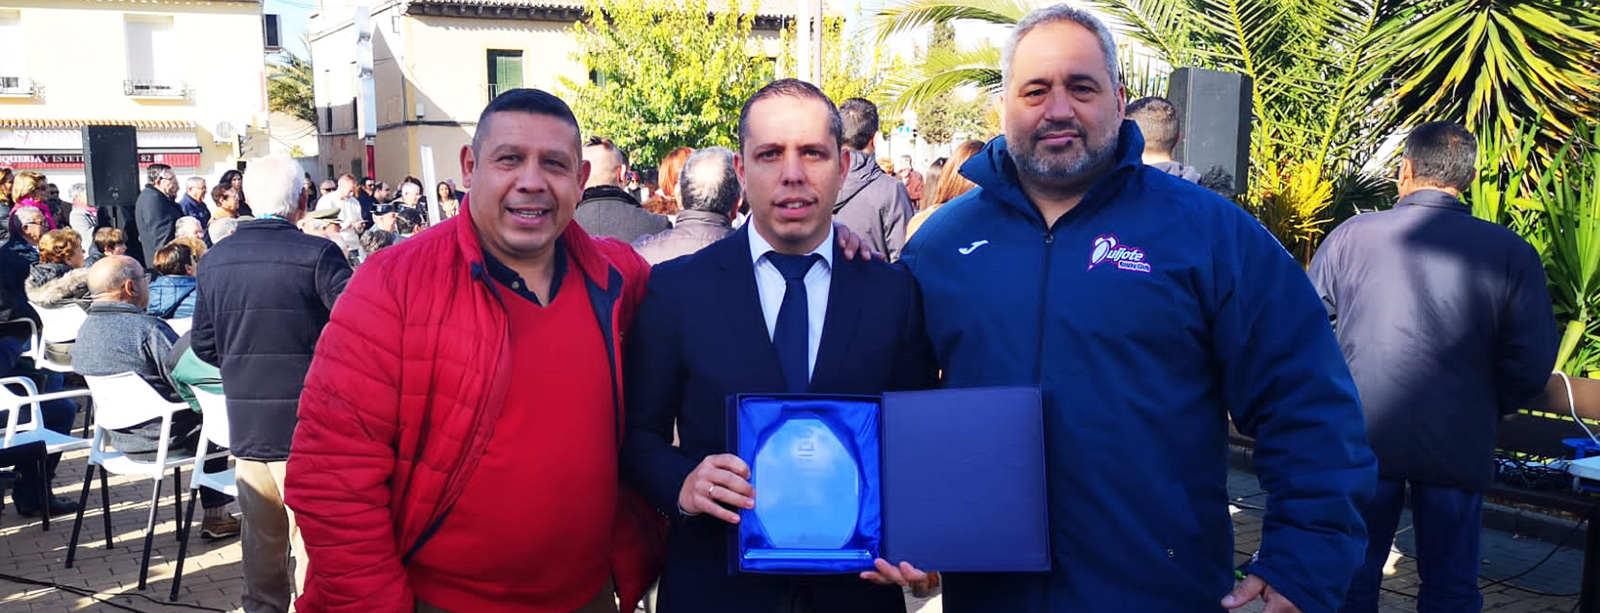 El Ayuntamiento de Yuncos premia al Quijote RC por su labor en favor del Rugby Inclusivo